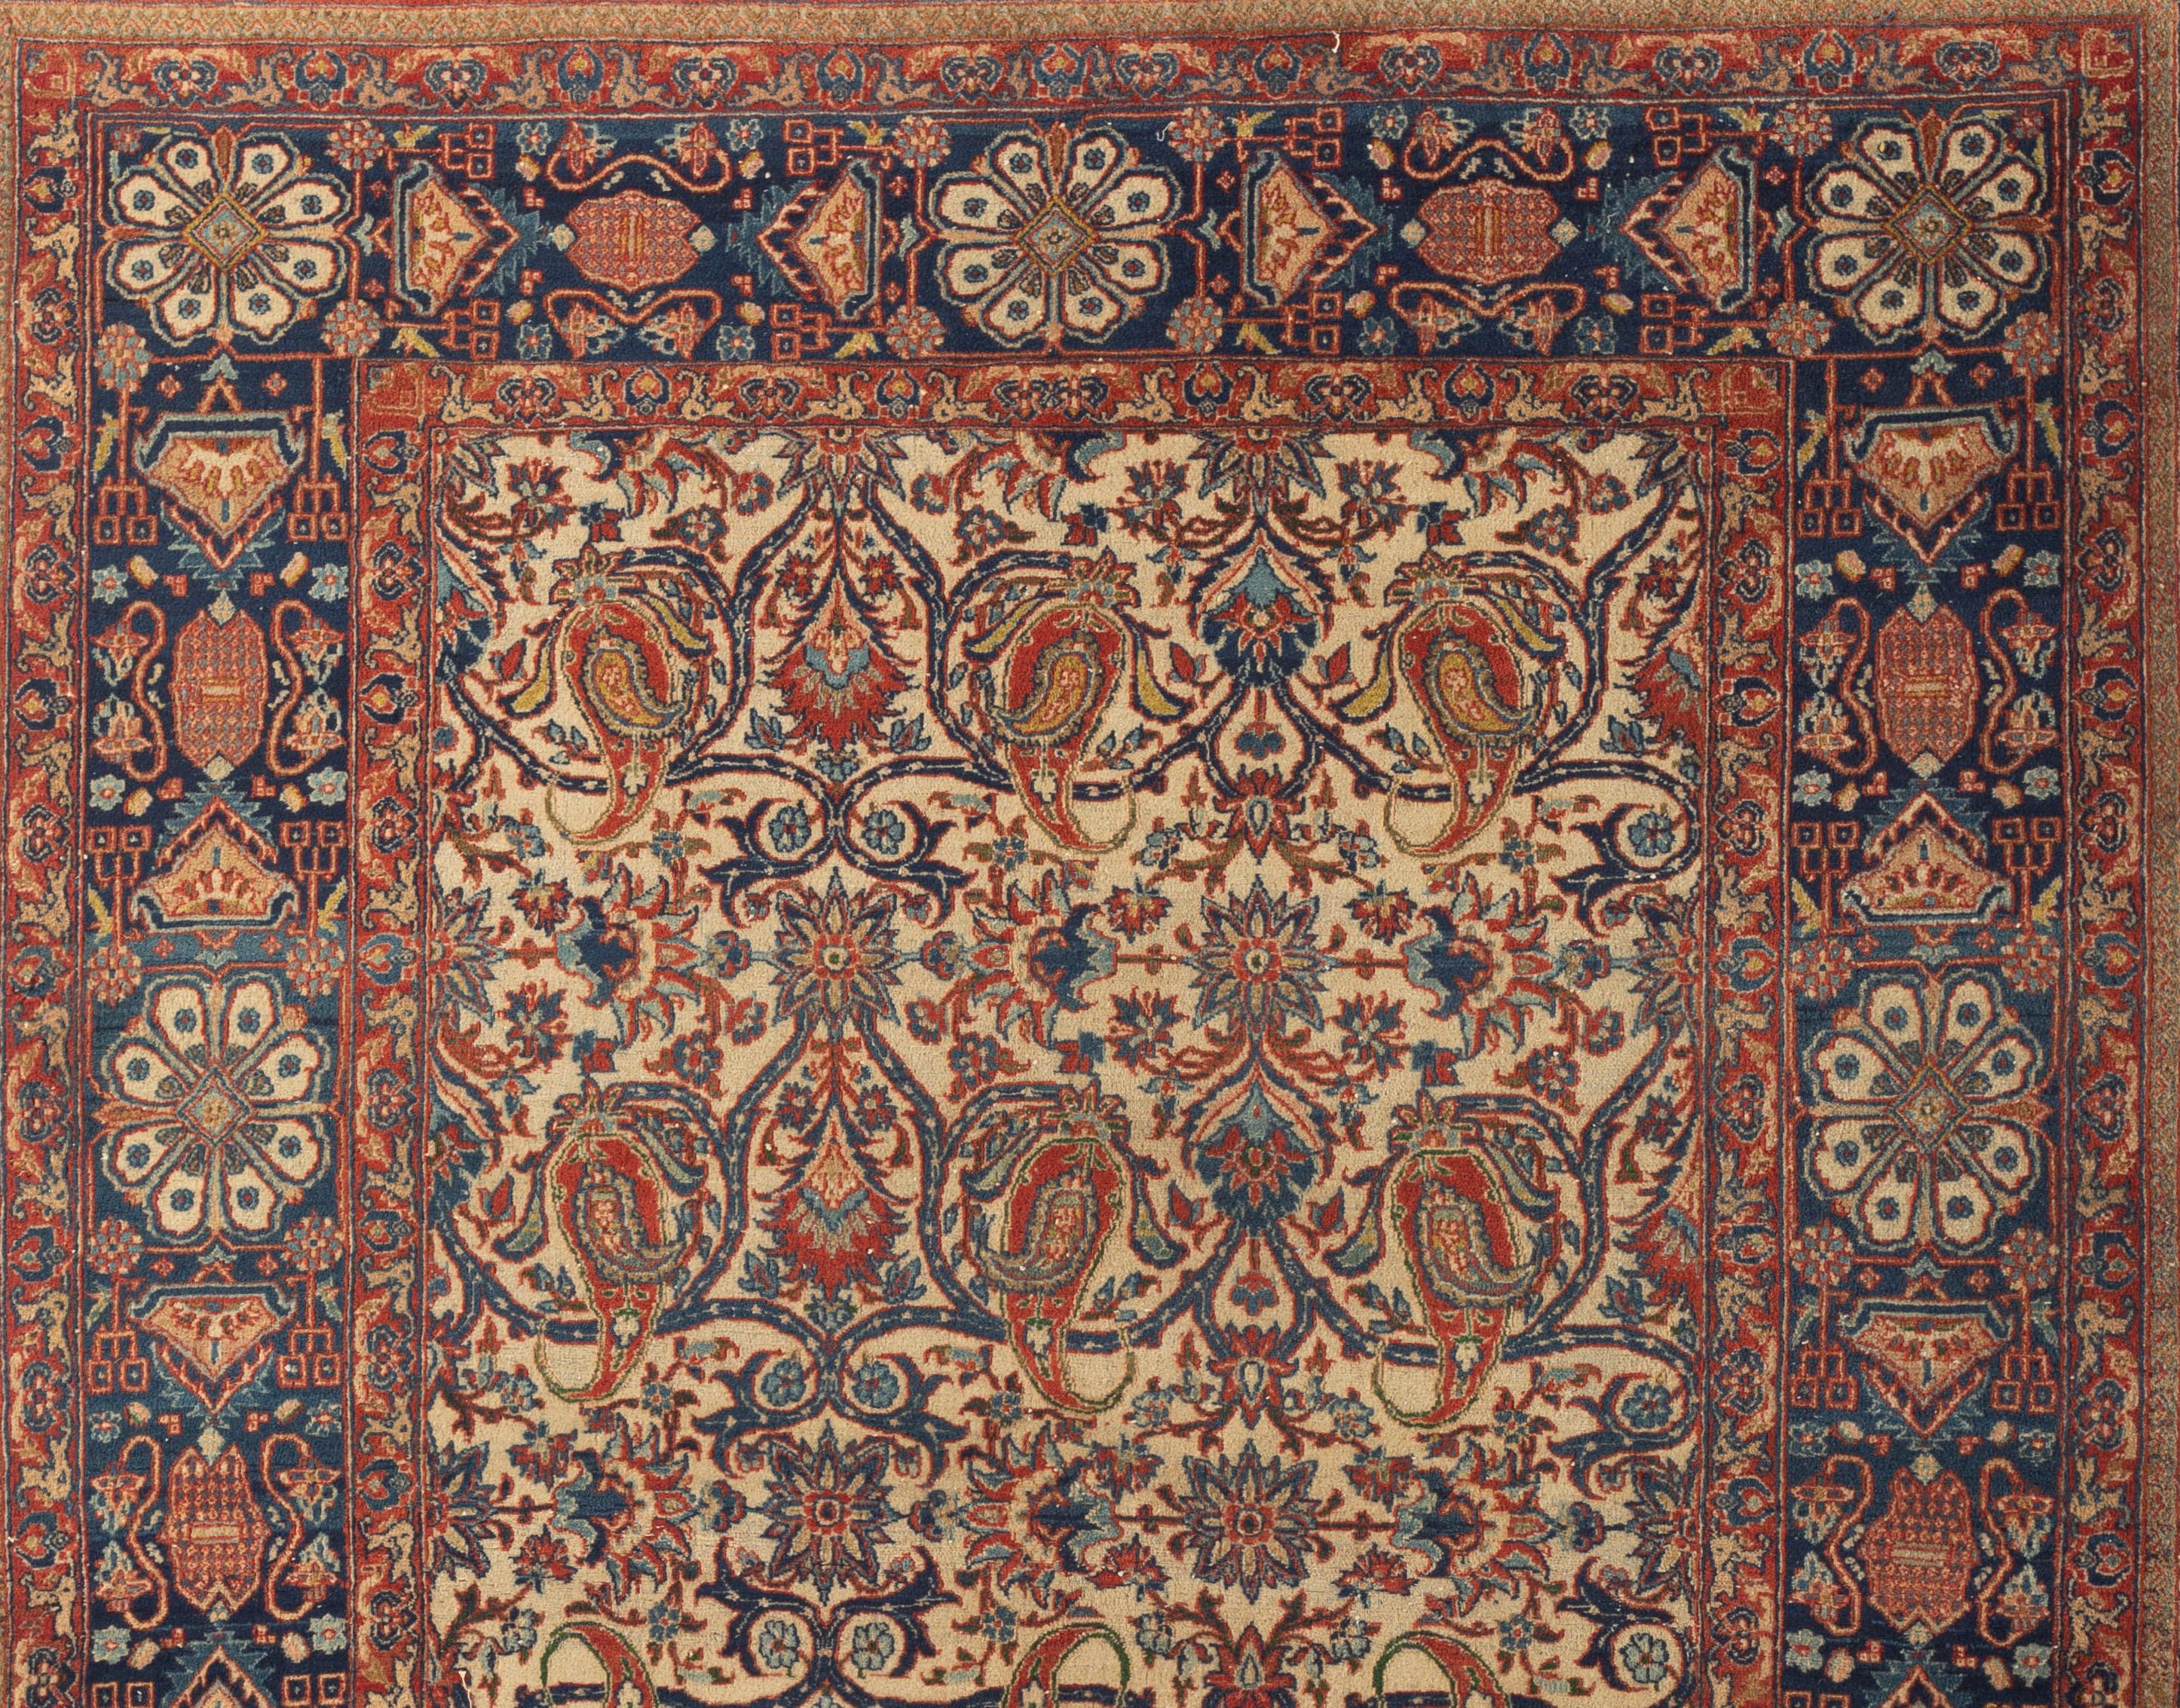 Tapis persan antique Isphahan, vers 1900. Un beau tapis persan Isphahan tissé à la main, réputé pour son art superbe, son artisanat et l'excellence de ses matériaux. Le champ ouvert ivoire est plein de motifs floraux détaillés et est si bien